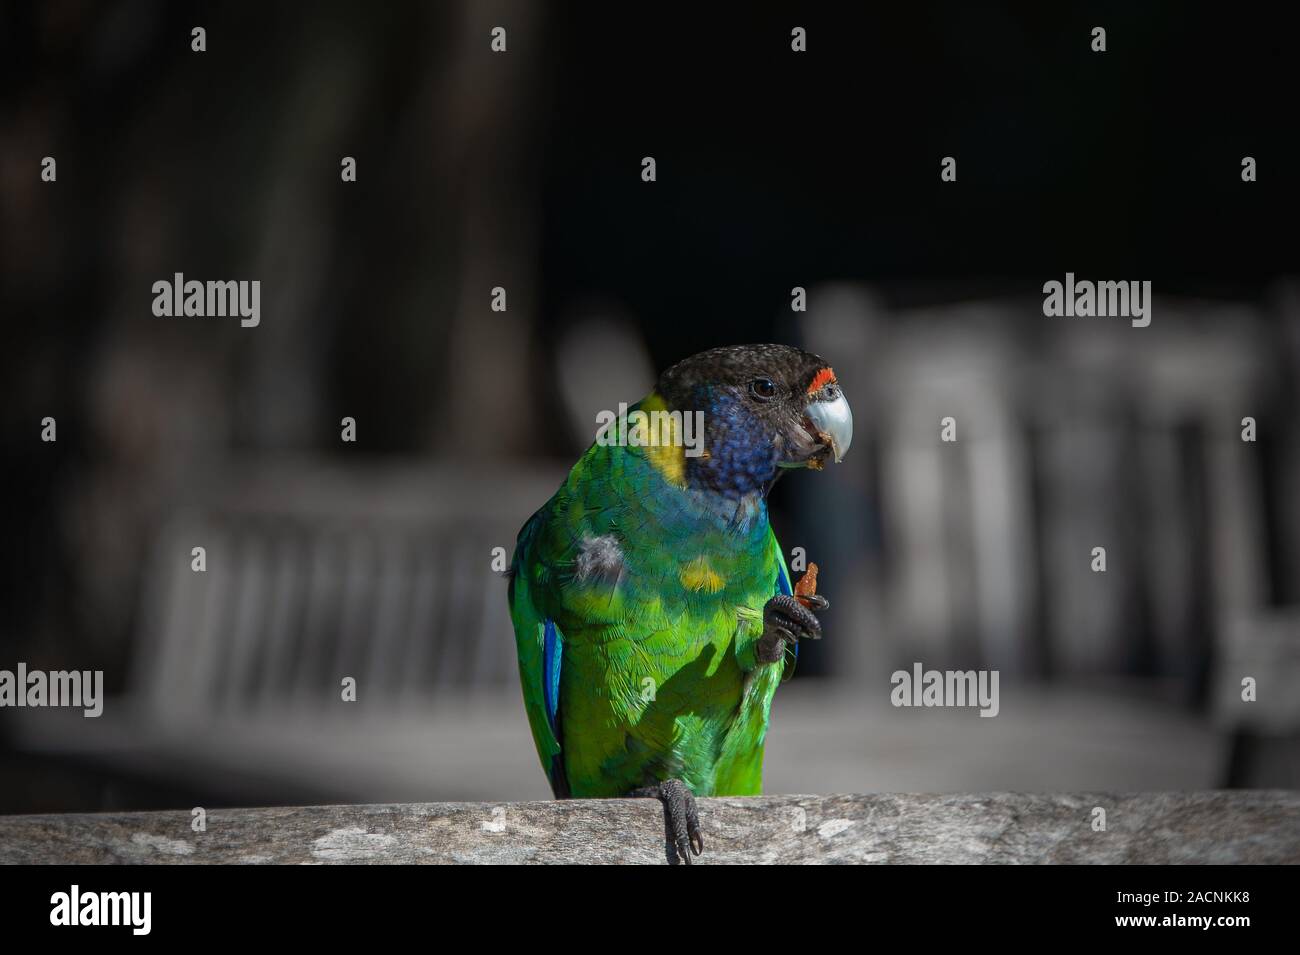 Australian Parrot à collier (Barnardius zonarius) contre un fond sombre Banque D'Images